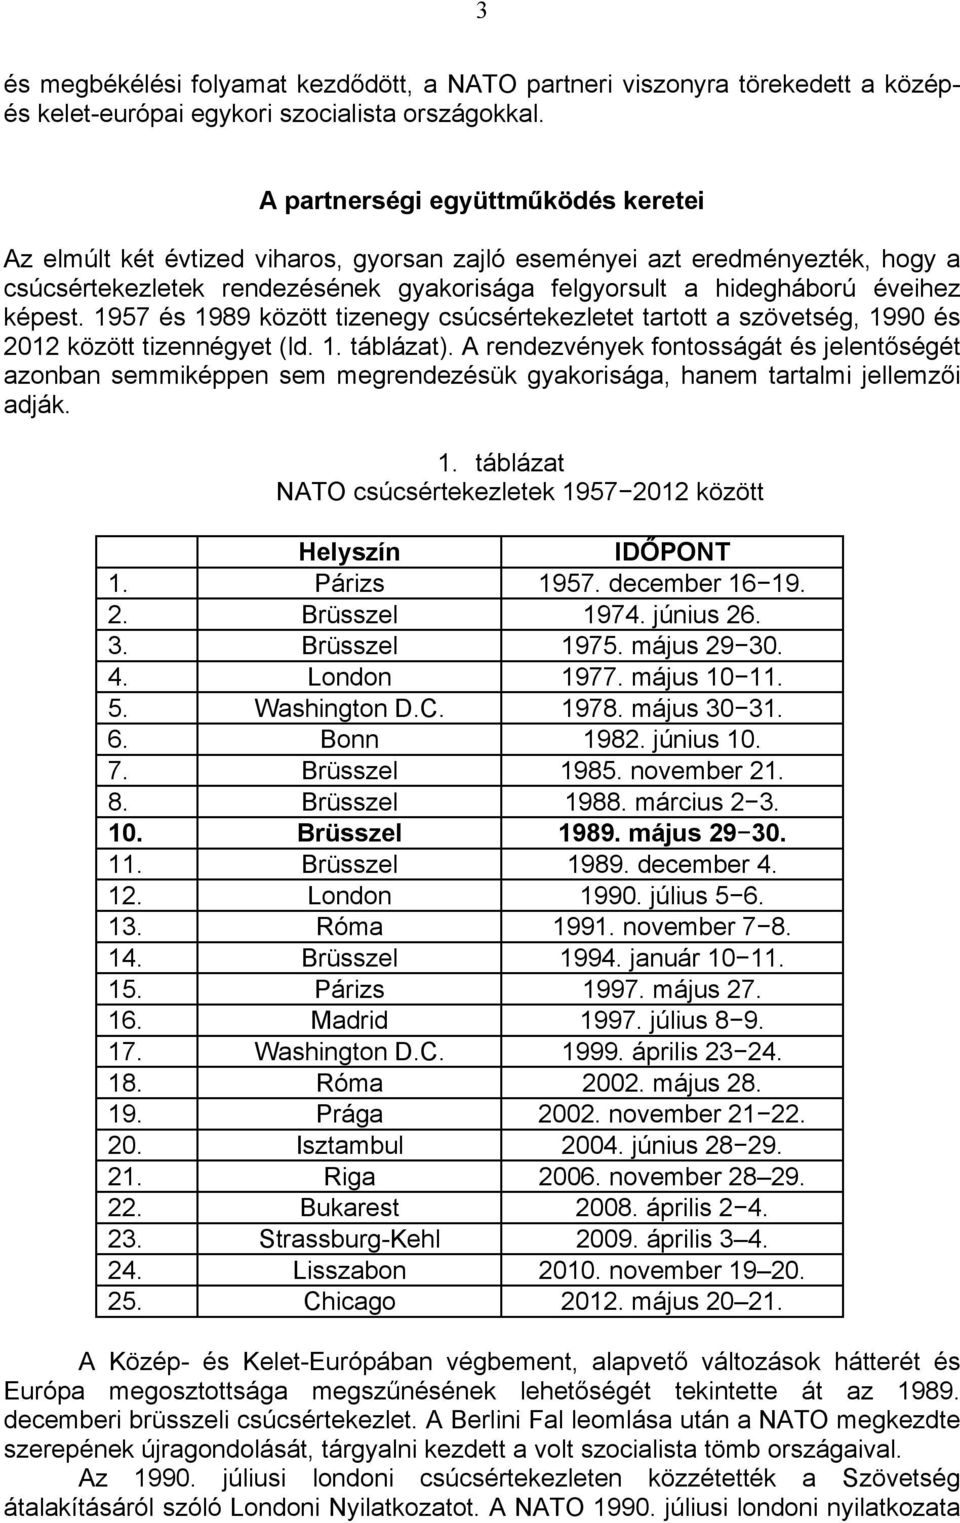 képest. 1957 és 1989 között tizenegy csúcsértekezletet tartott a szövetség, 1990 és 2012 között tizennégyet (ld. 1. táblázat).